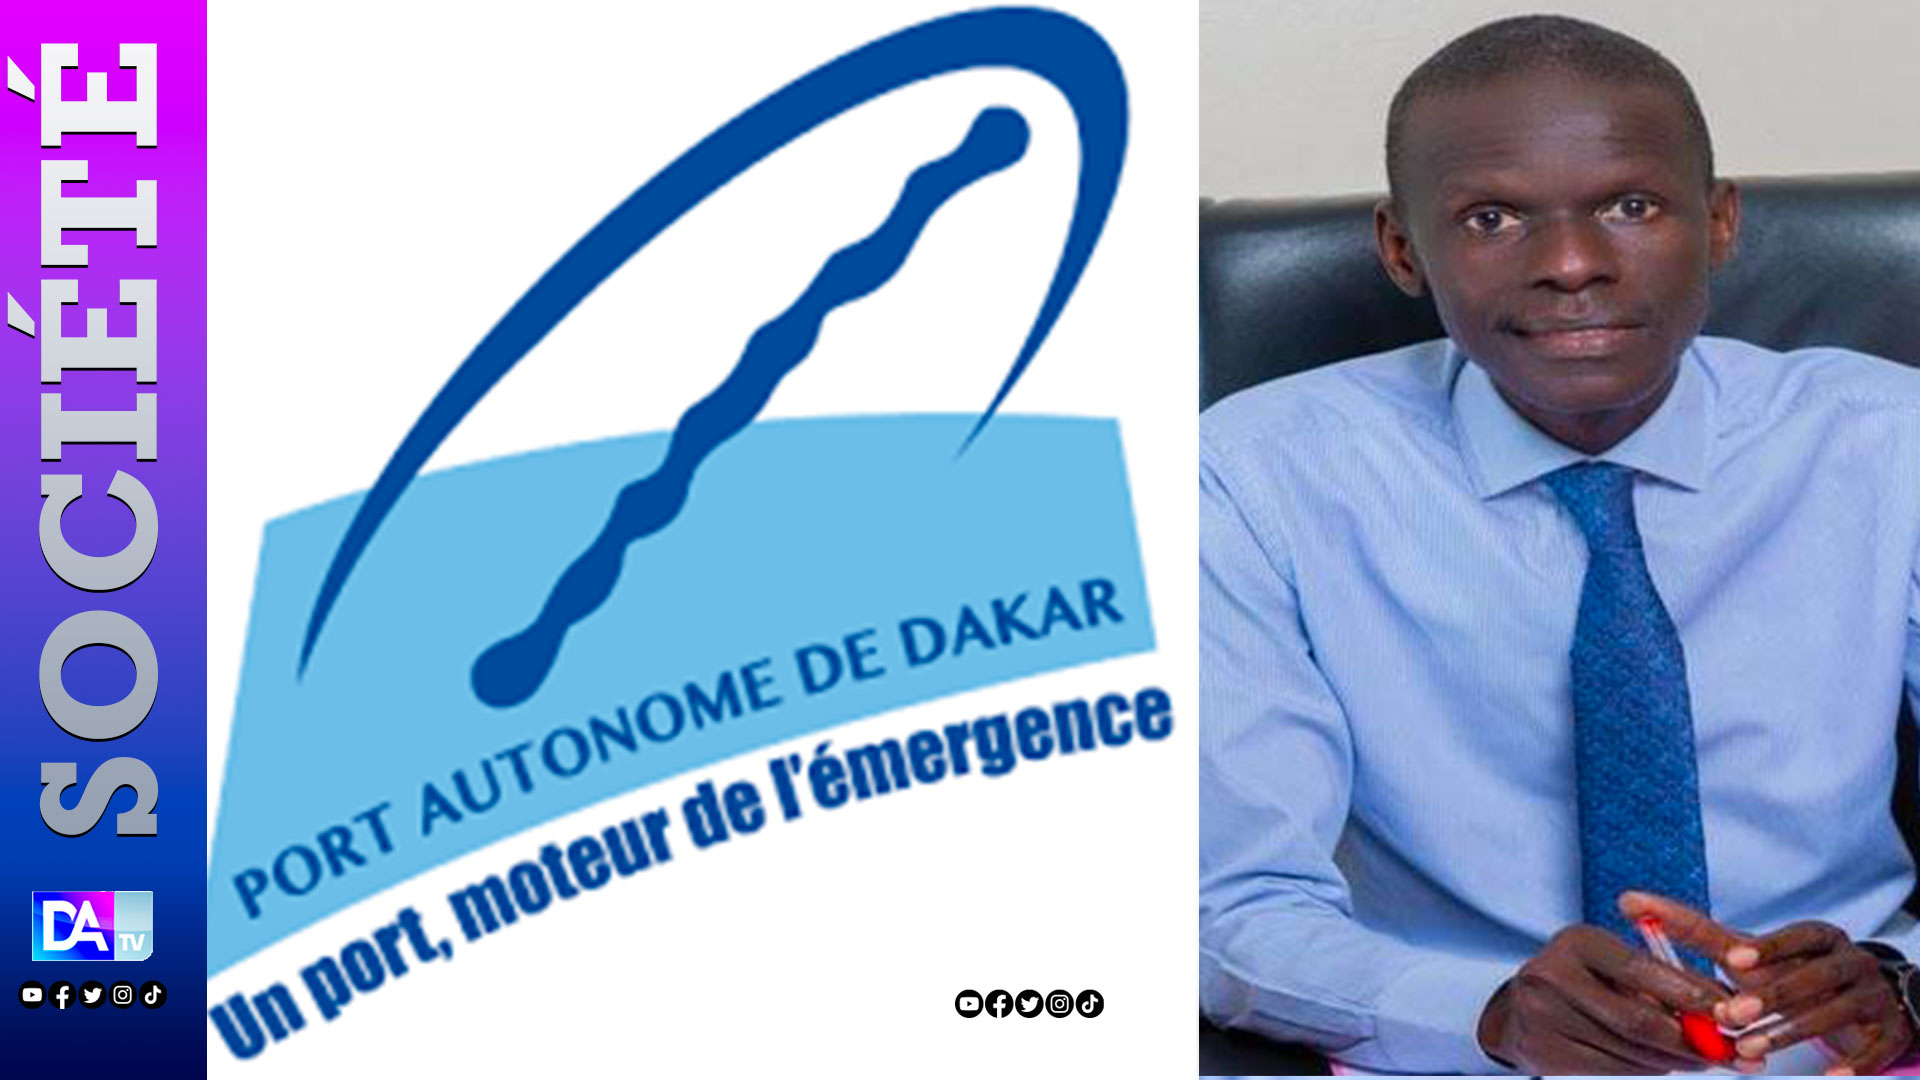 Port autonome de Dakar: Waly Diouf Bodiang aux commandes